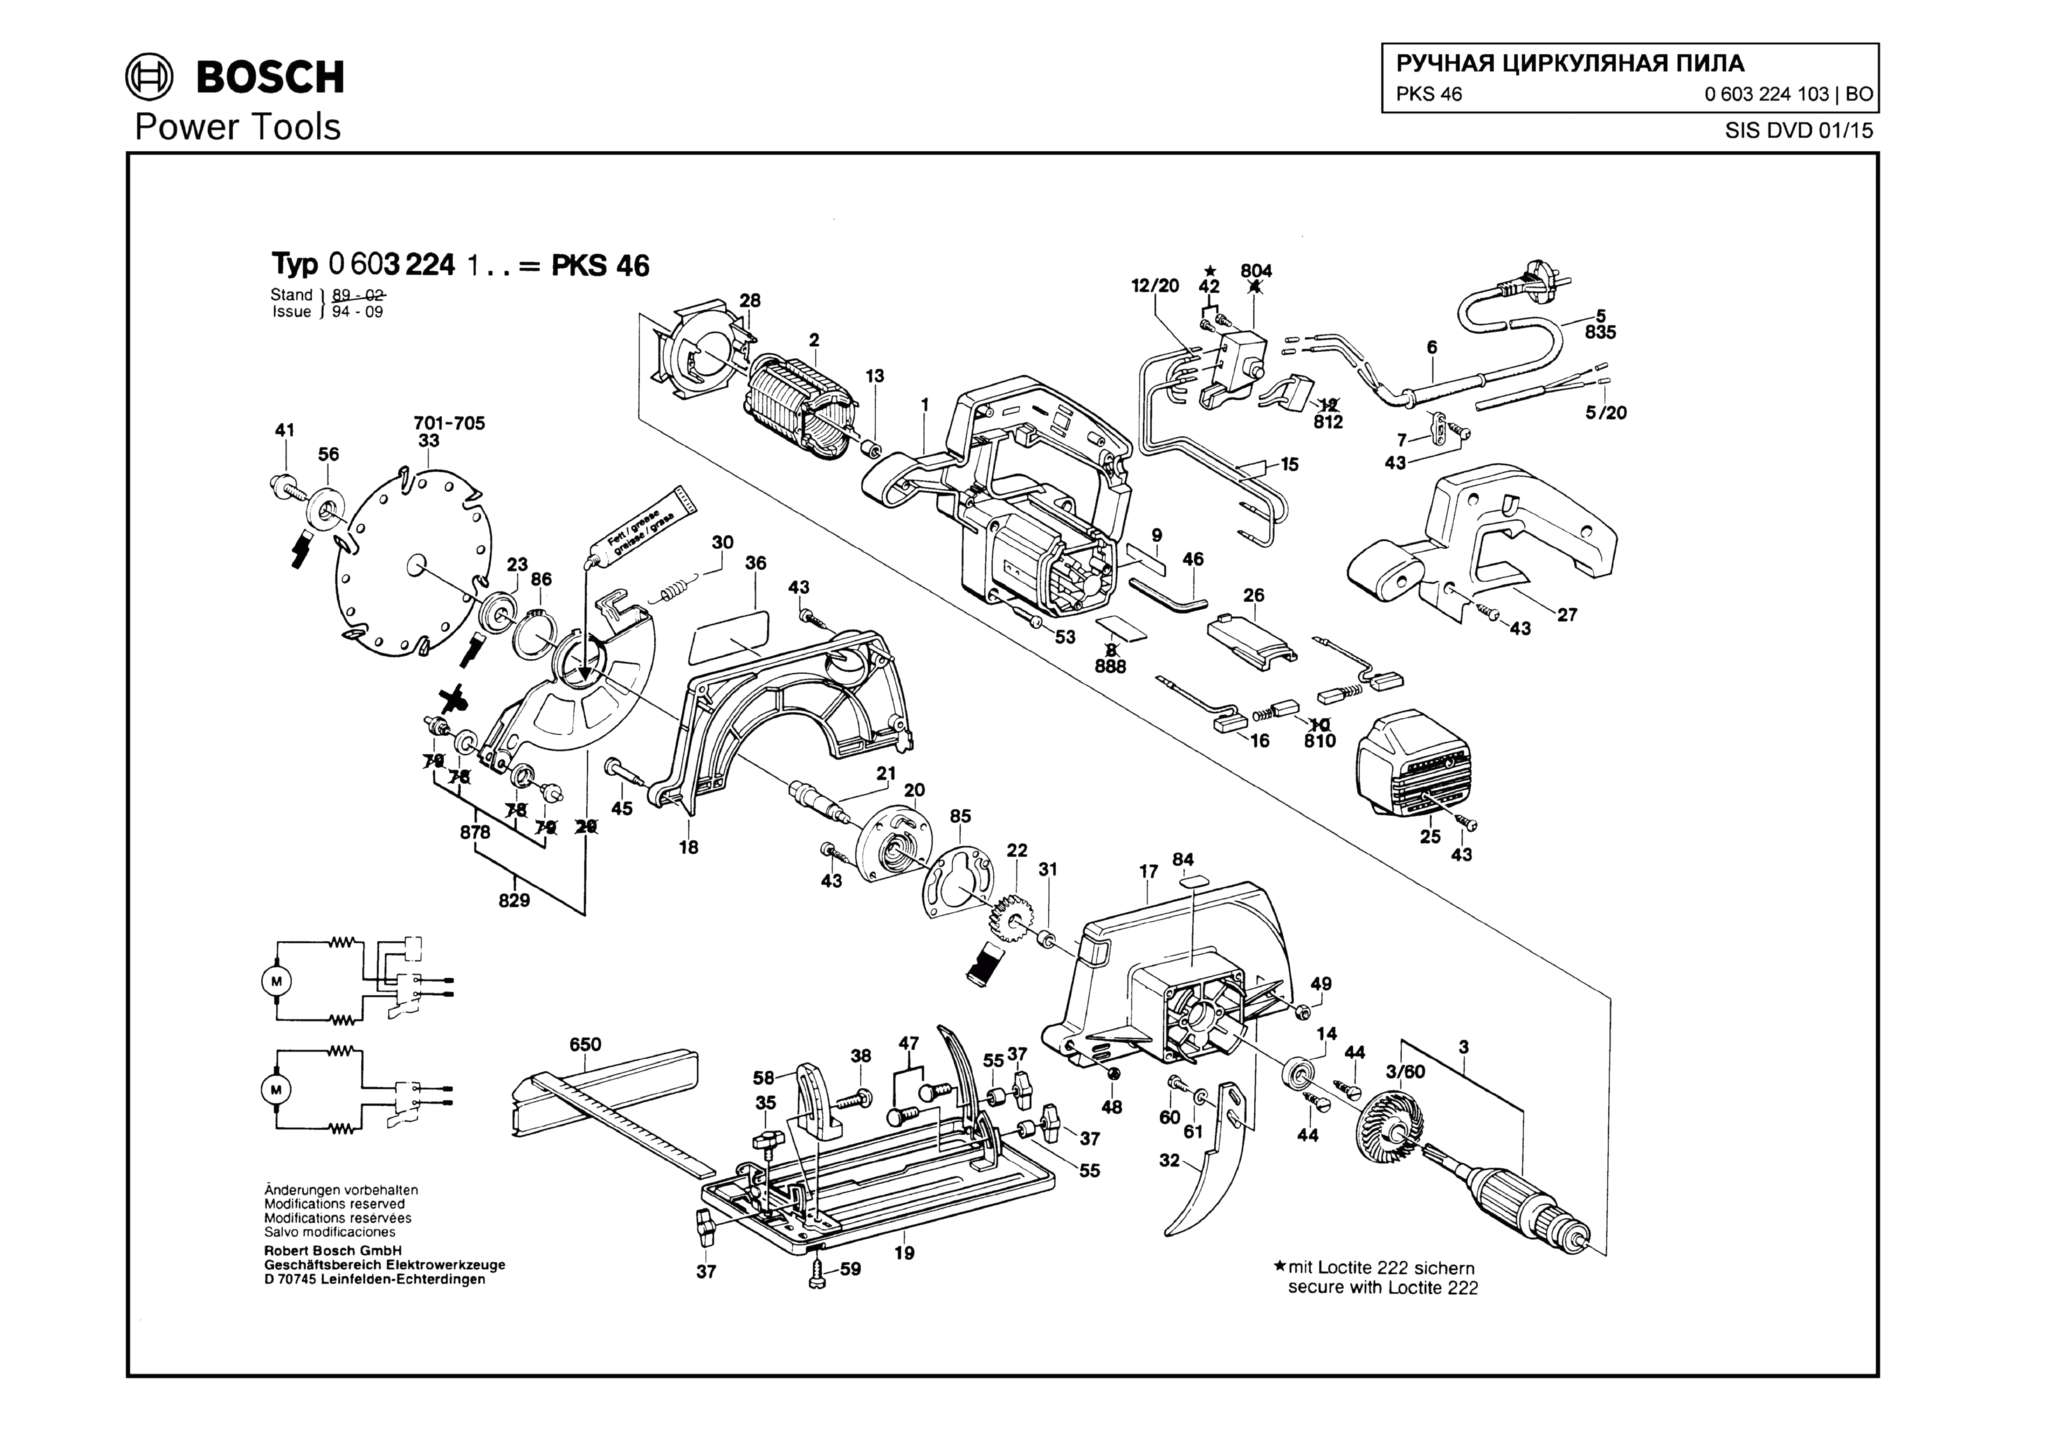 Запчасти, схема и деталировка Bosch PKS 46 (ТИП 0603224103)